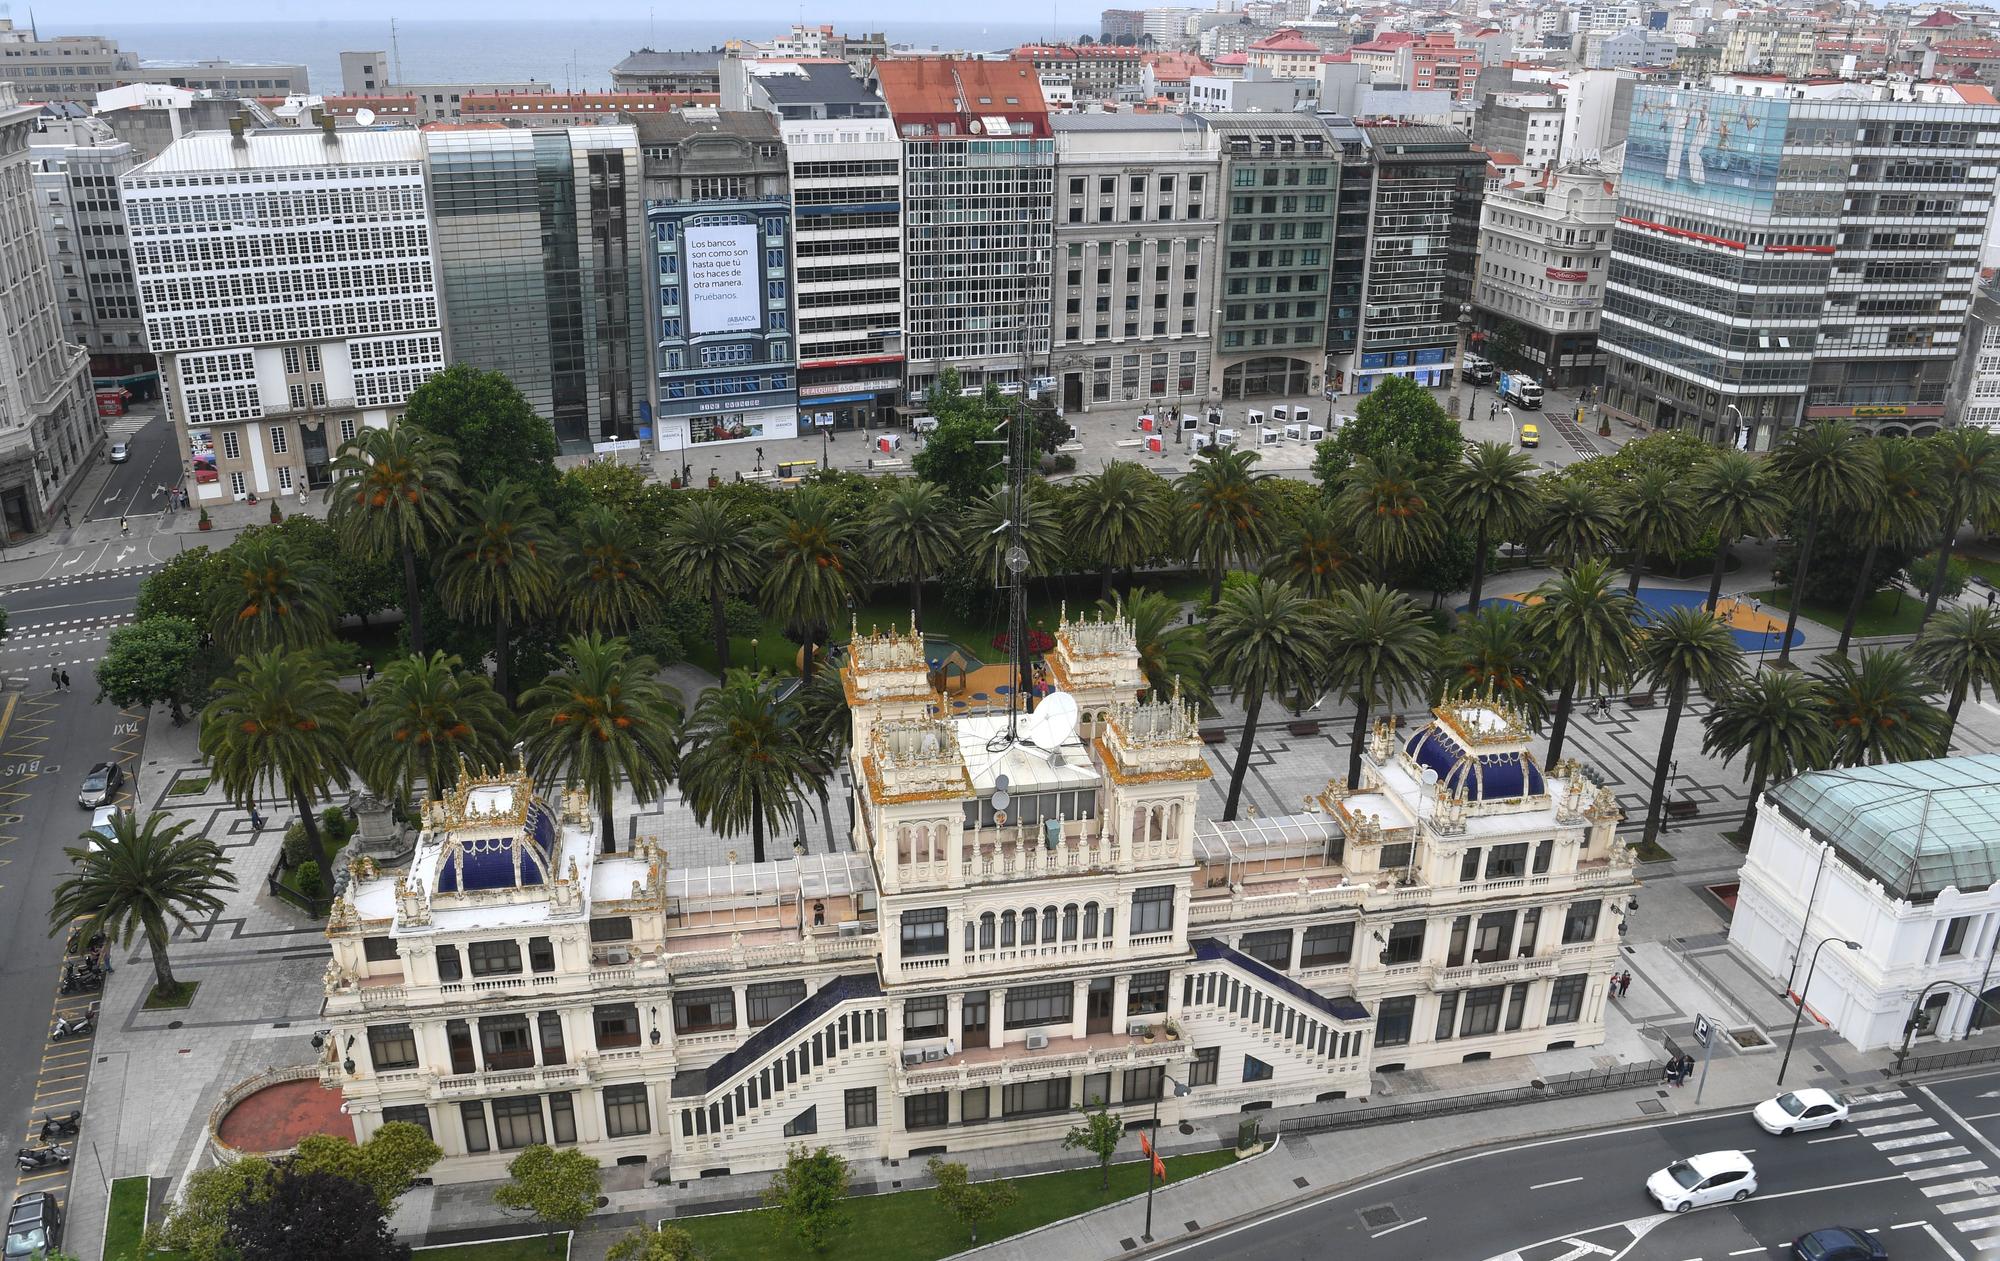 Así se ve A Coruña desde la noria del puerto